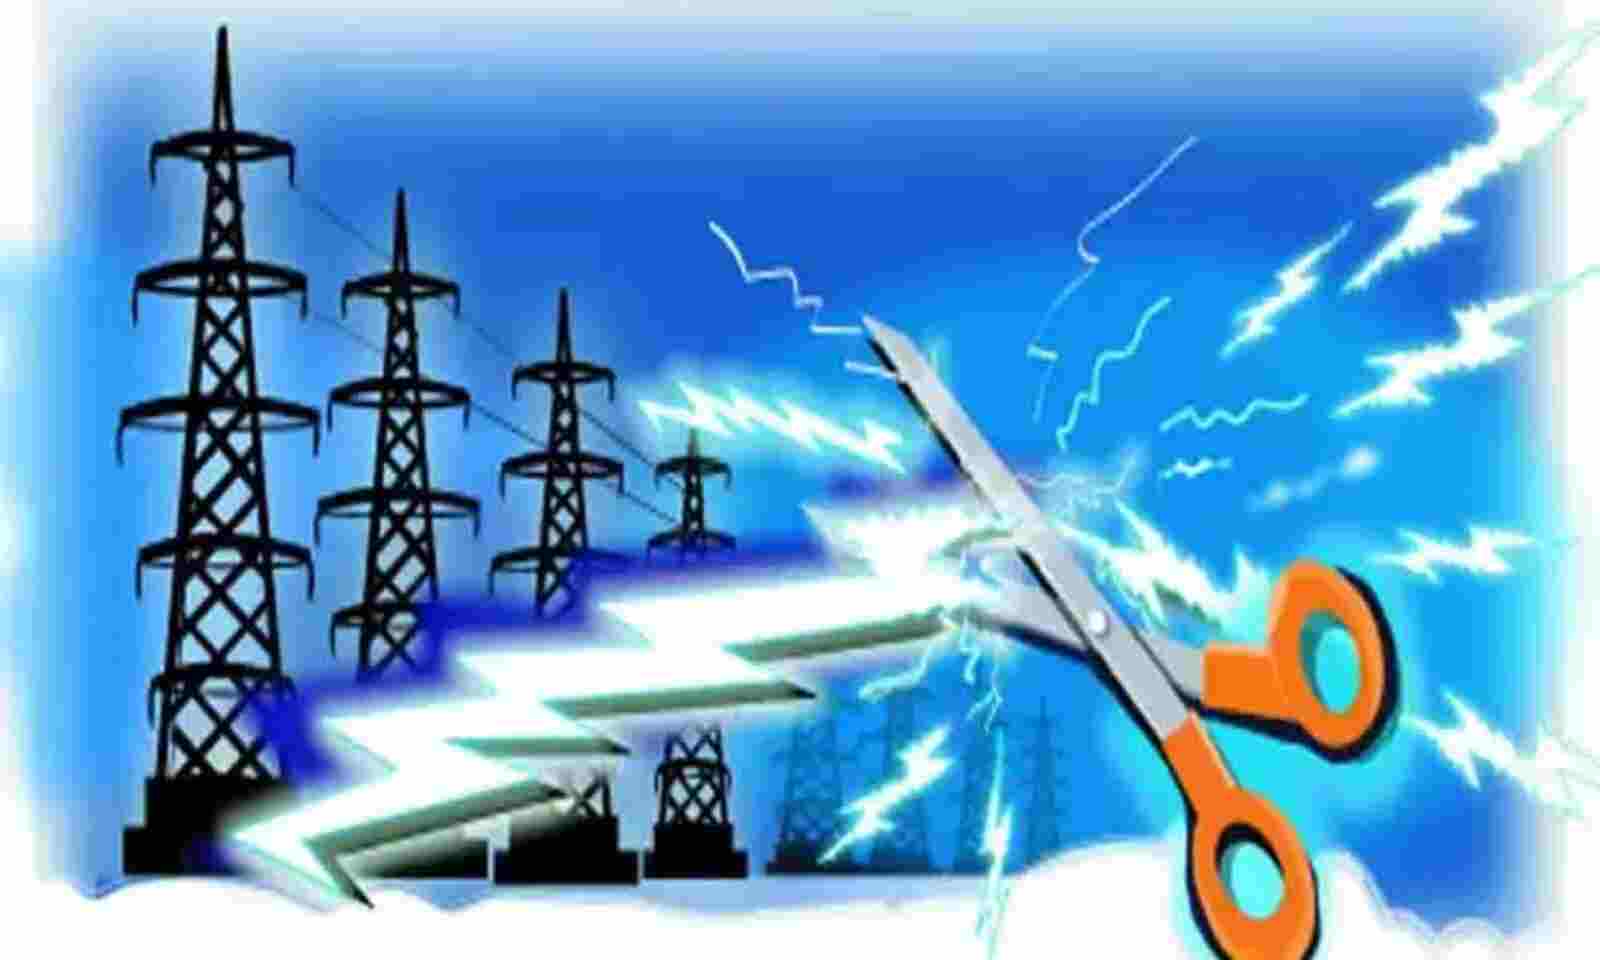 Power cut in Bengaluru